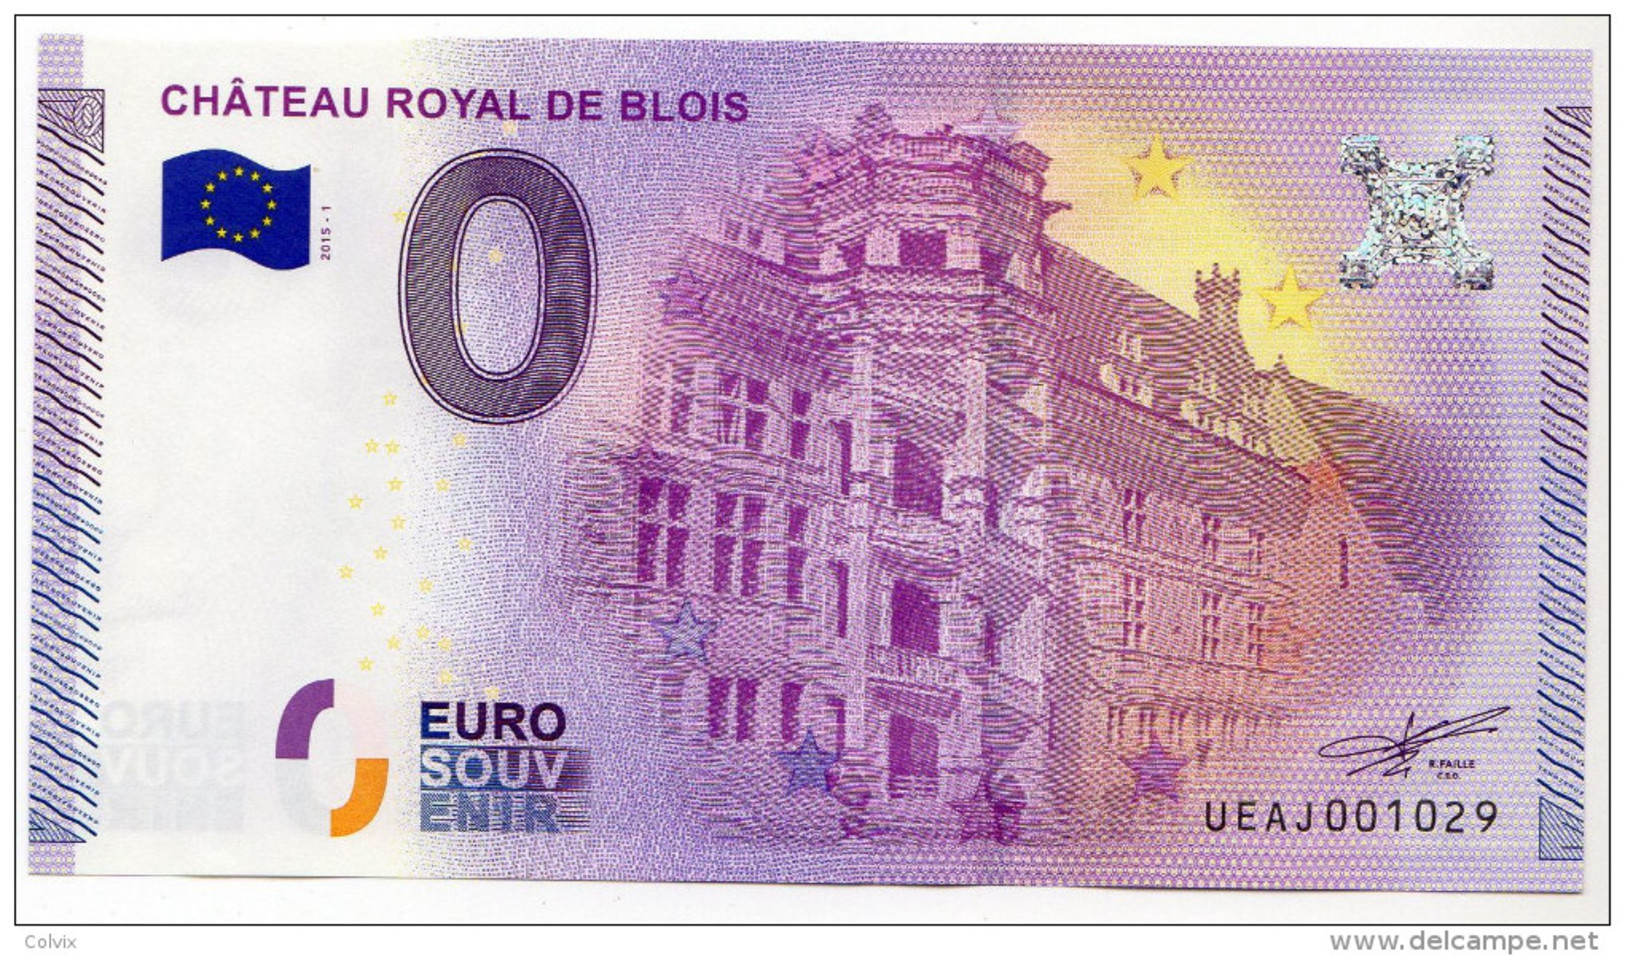 2015-1 BILLET TOURISTIQUE FRANCE 0 EURO SOUVENIR N° 001005 CHATEAU ROYAL DE BLOIS - Privatentwürfe